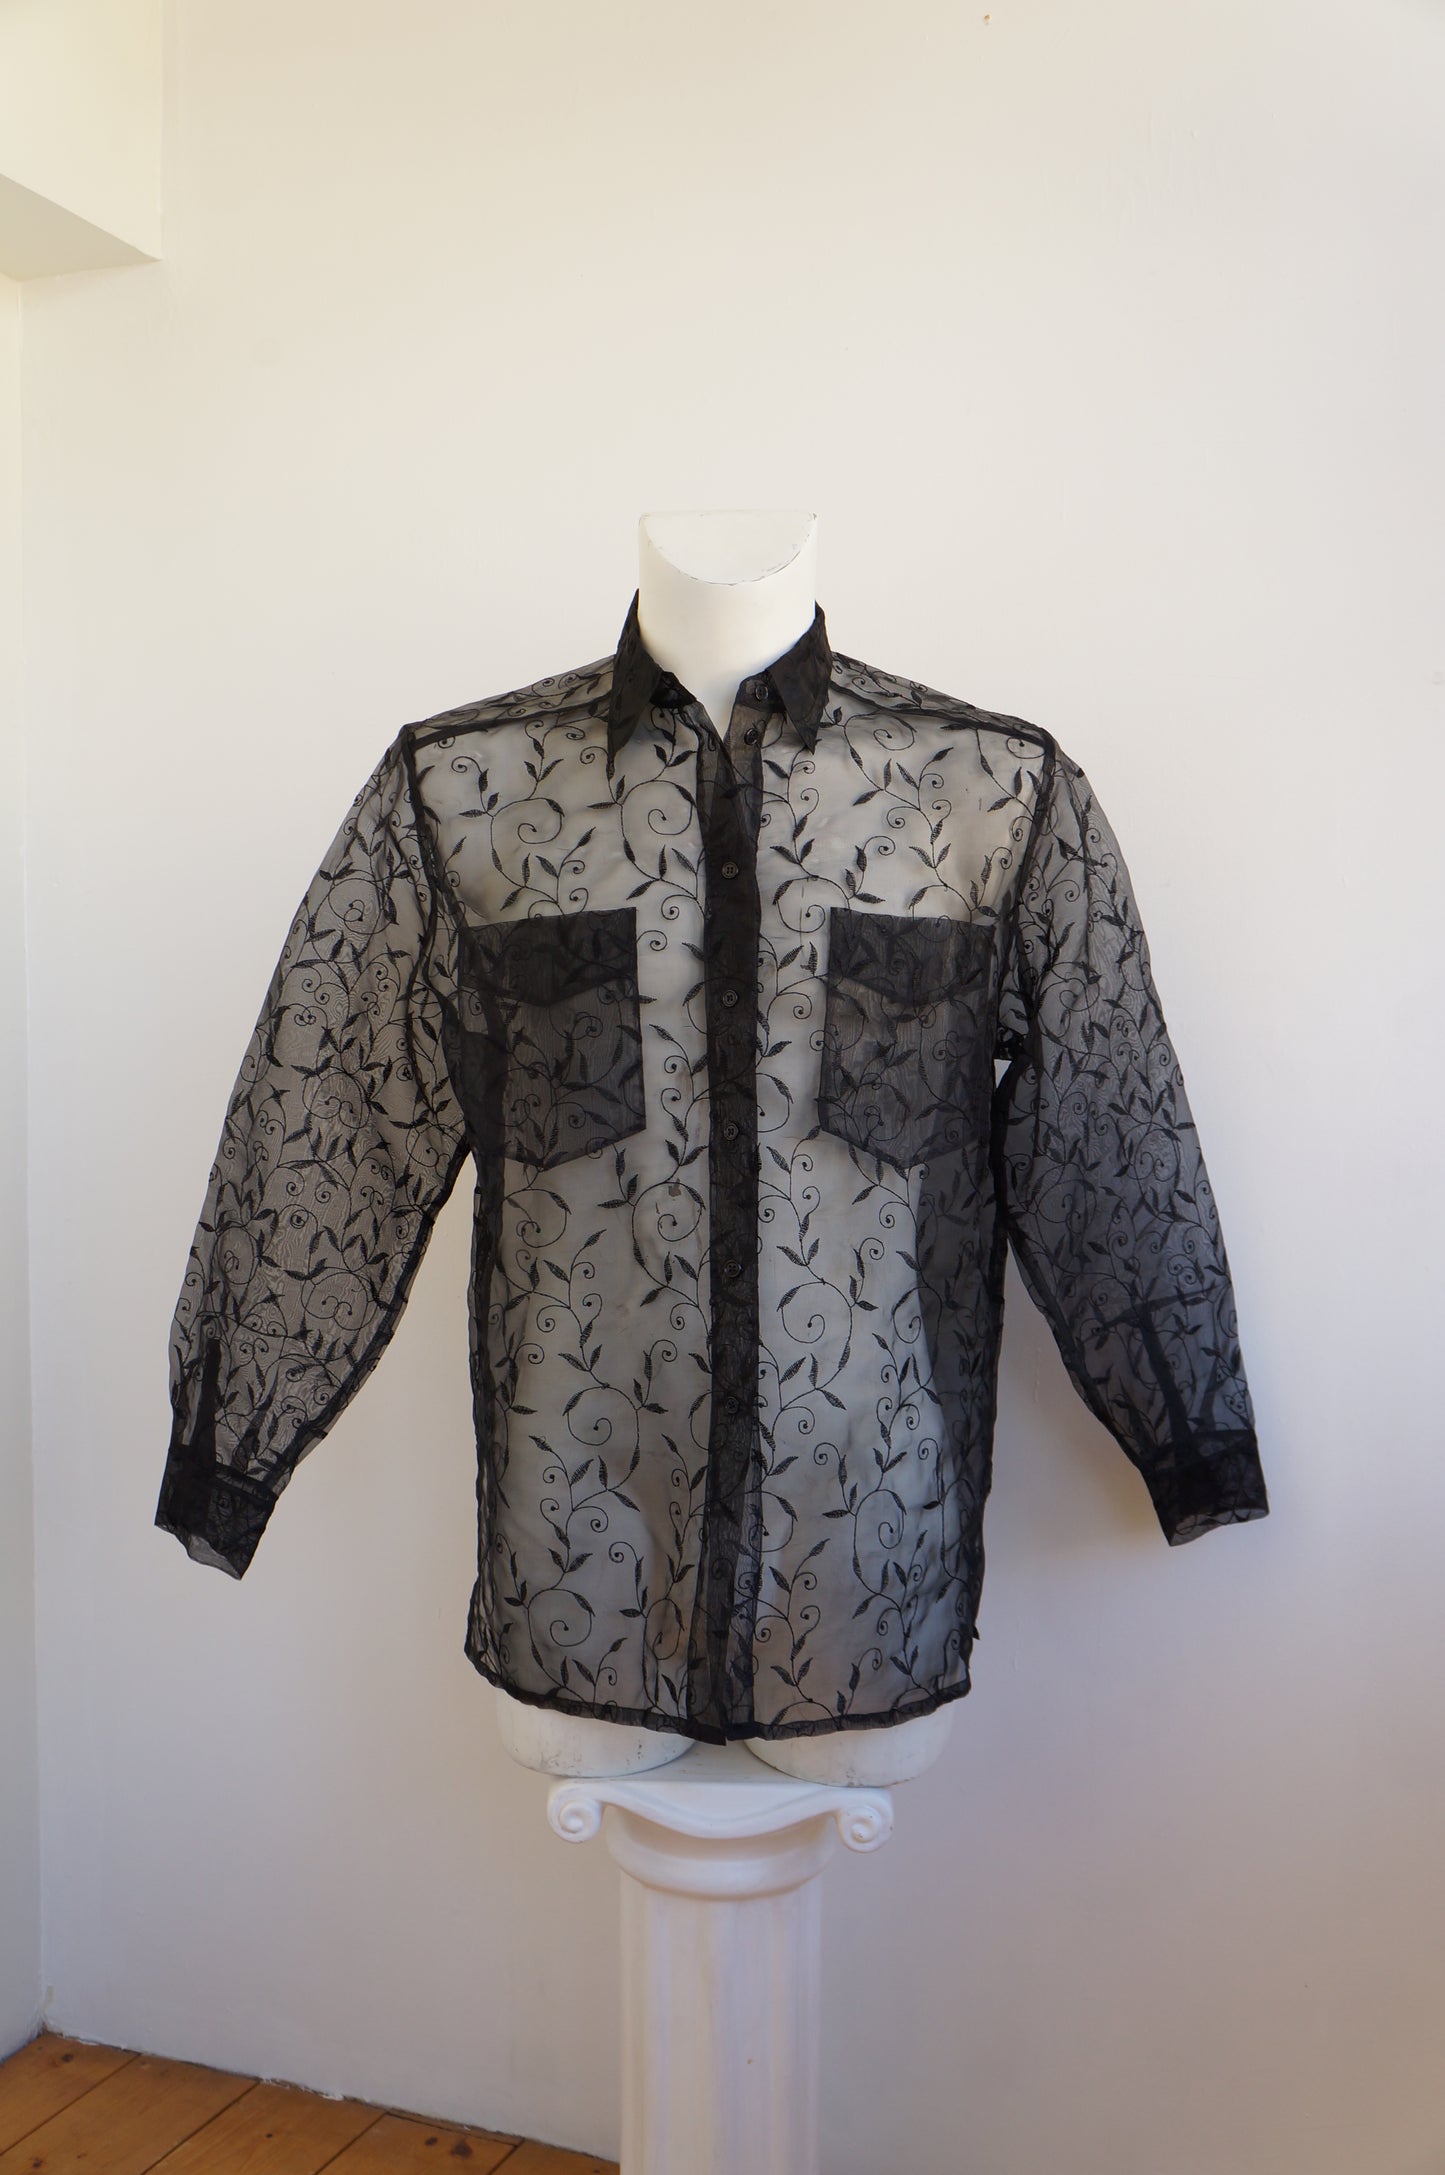 Black floral lace shirt